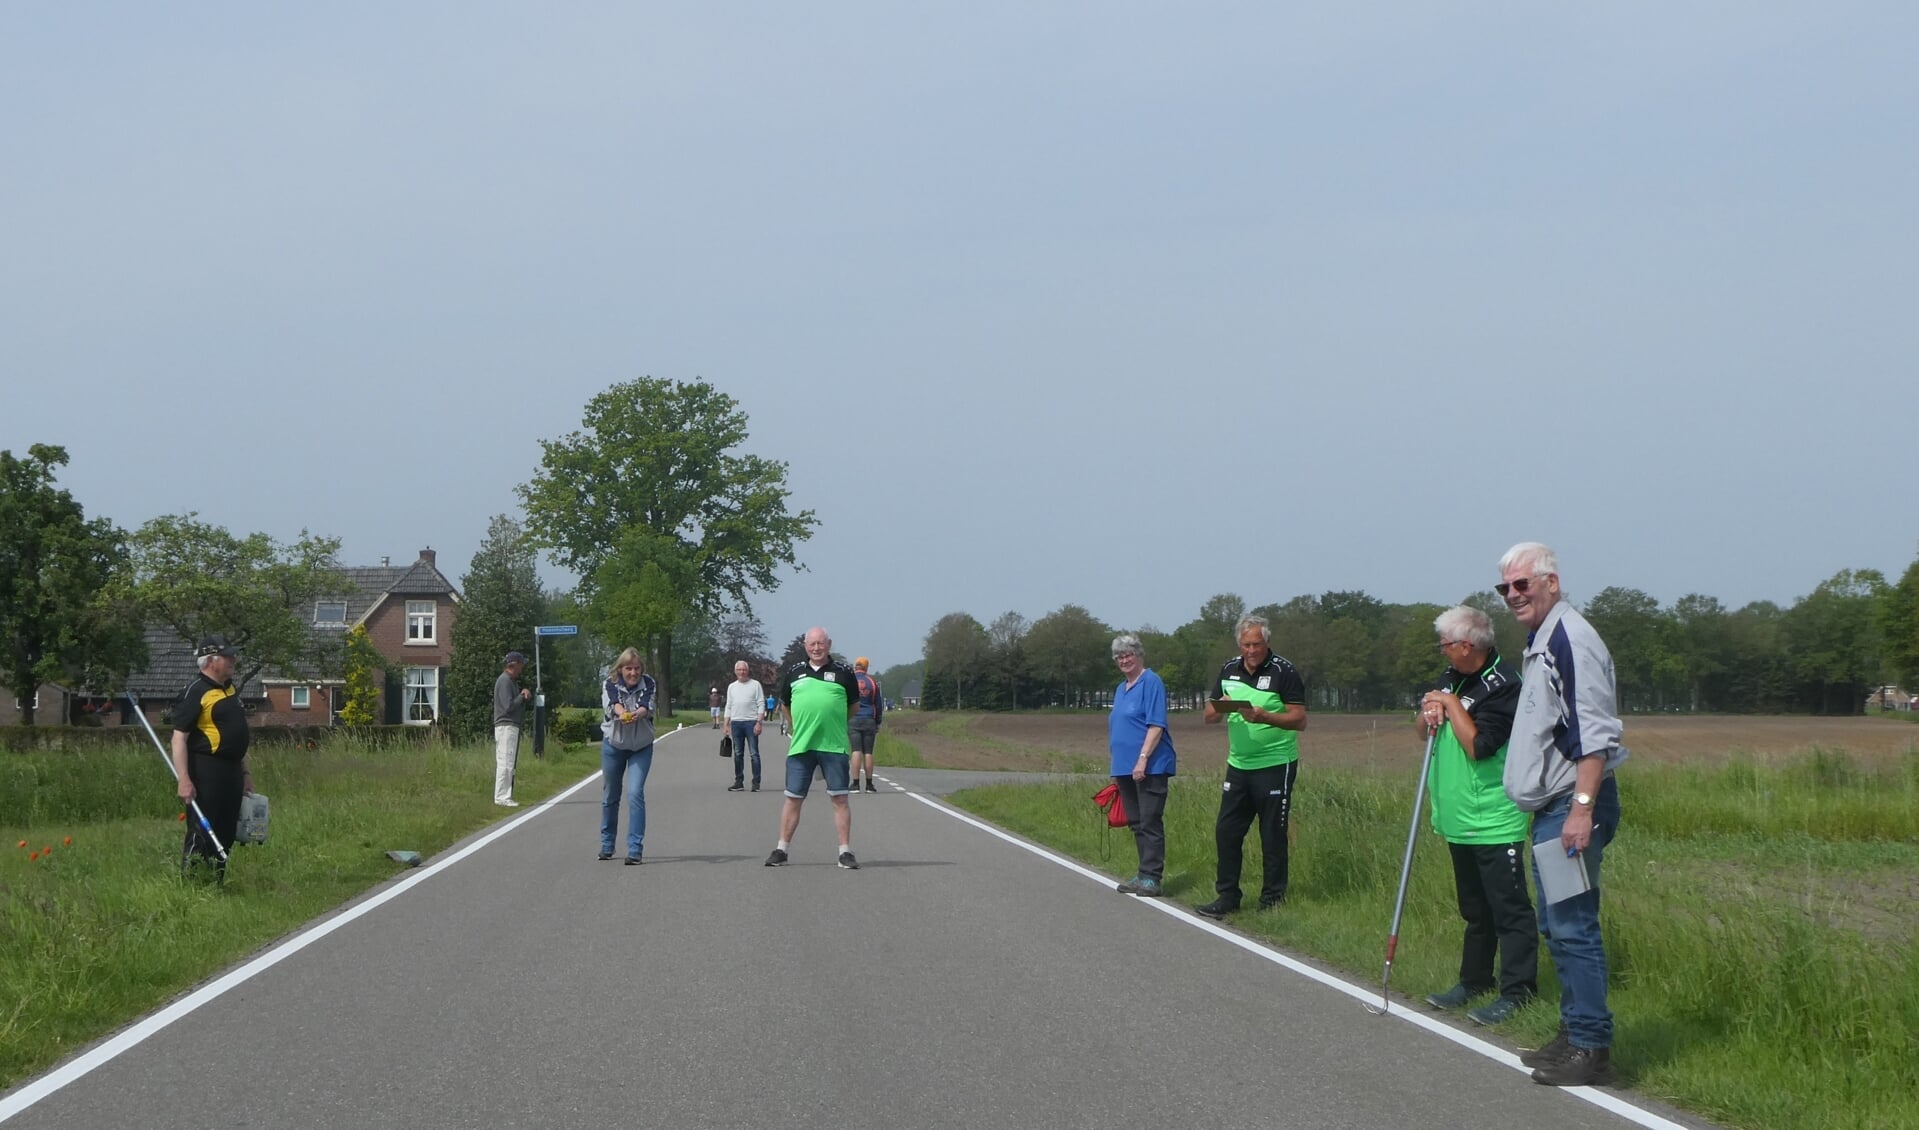 De teams van Respelhoek uit Geesteren en De Heksenlaak uit Barchem streden tegen elkaar op het motorcircuit. Foto's: Jan Hendriksen. 